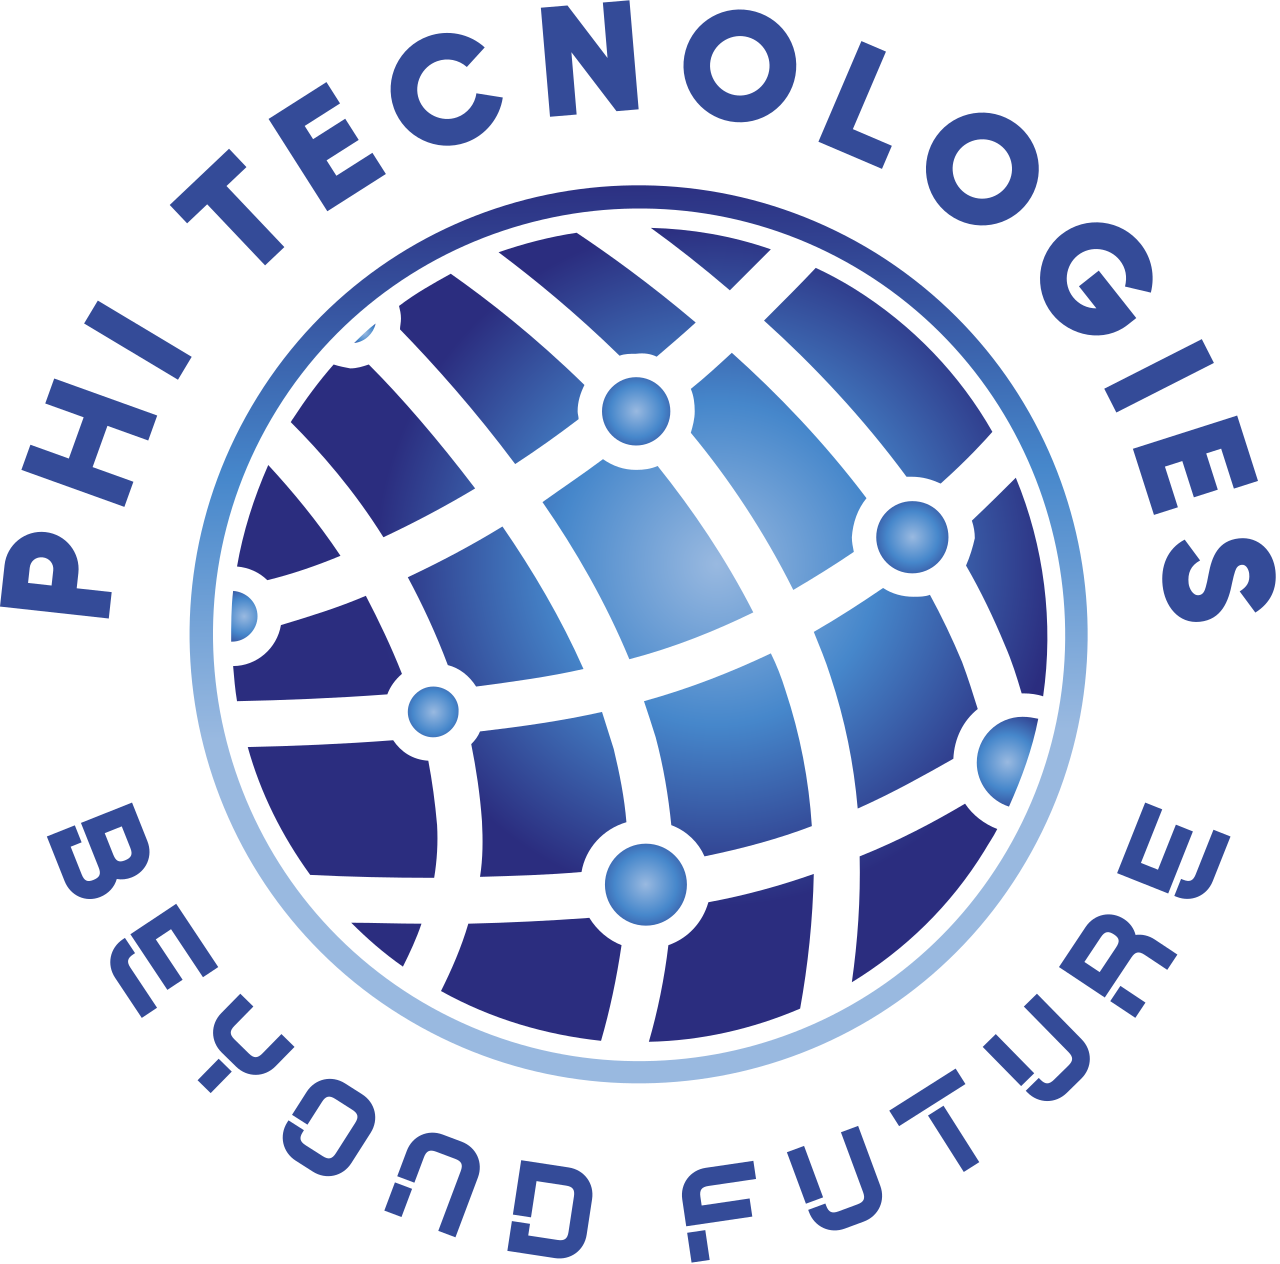 Phi Tecnologies's web page